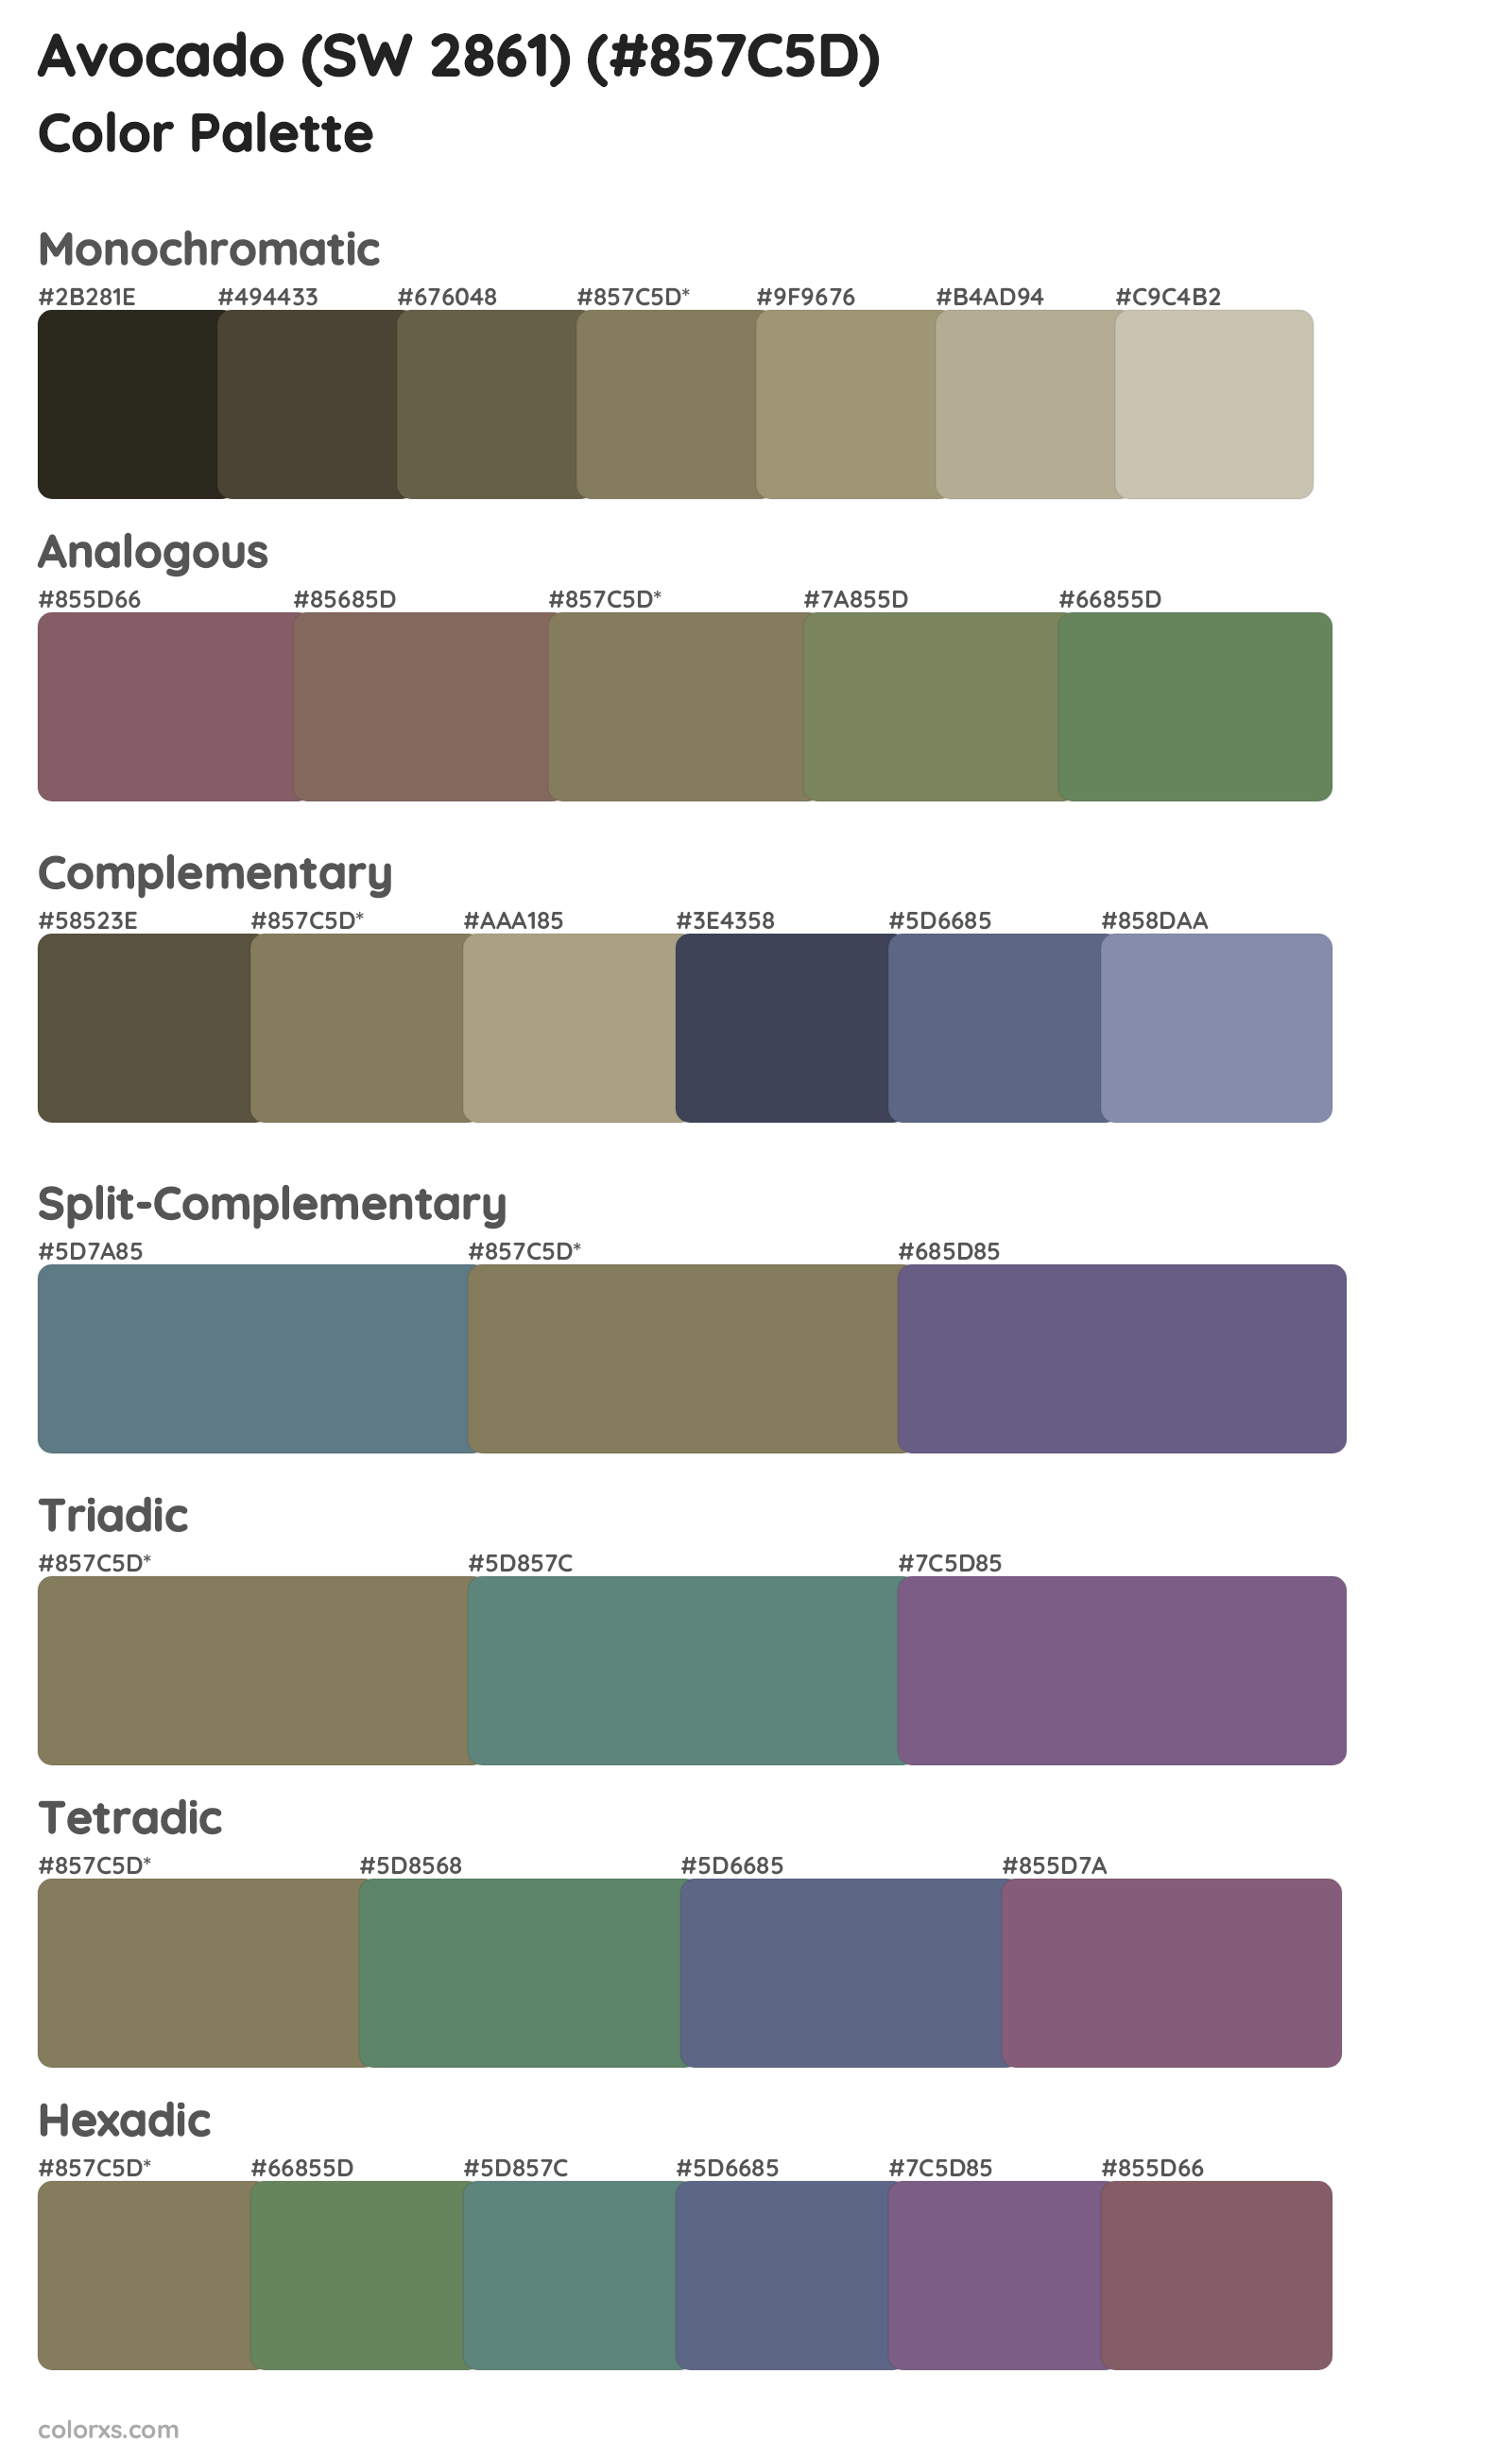 Avocado (SW 2861) Color Scheme Palettes